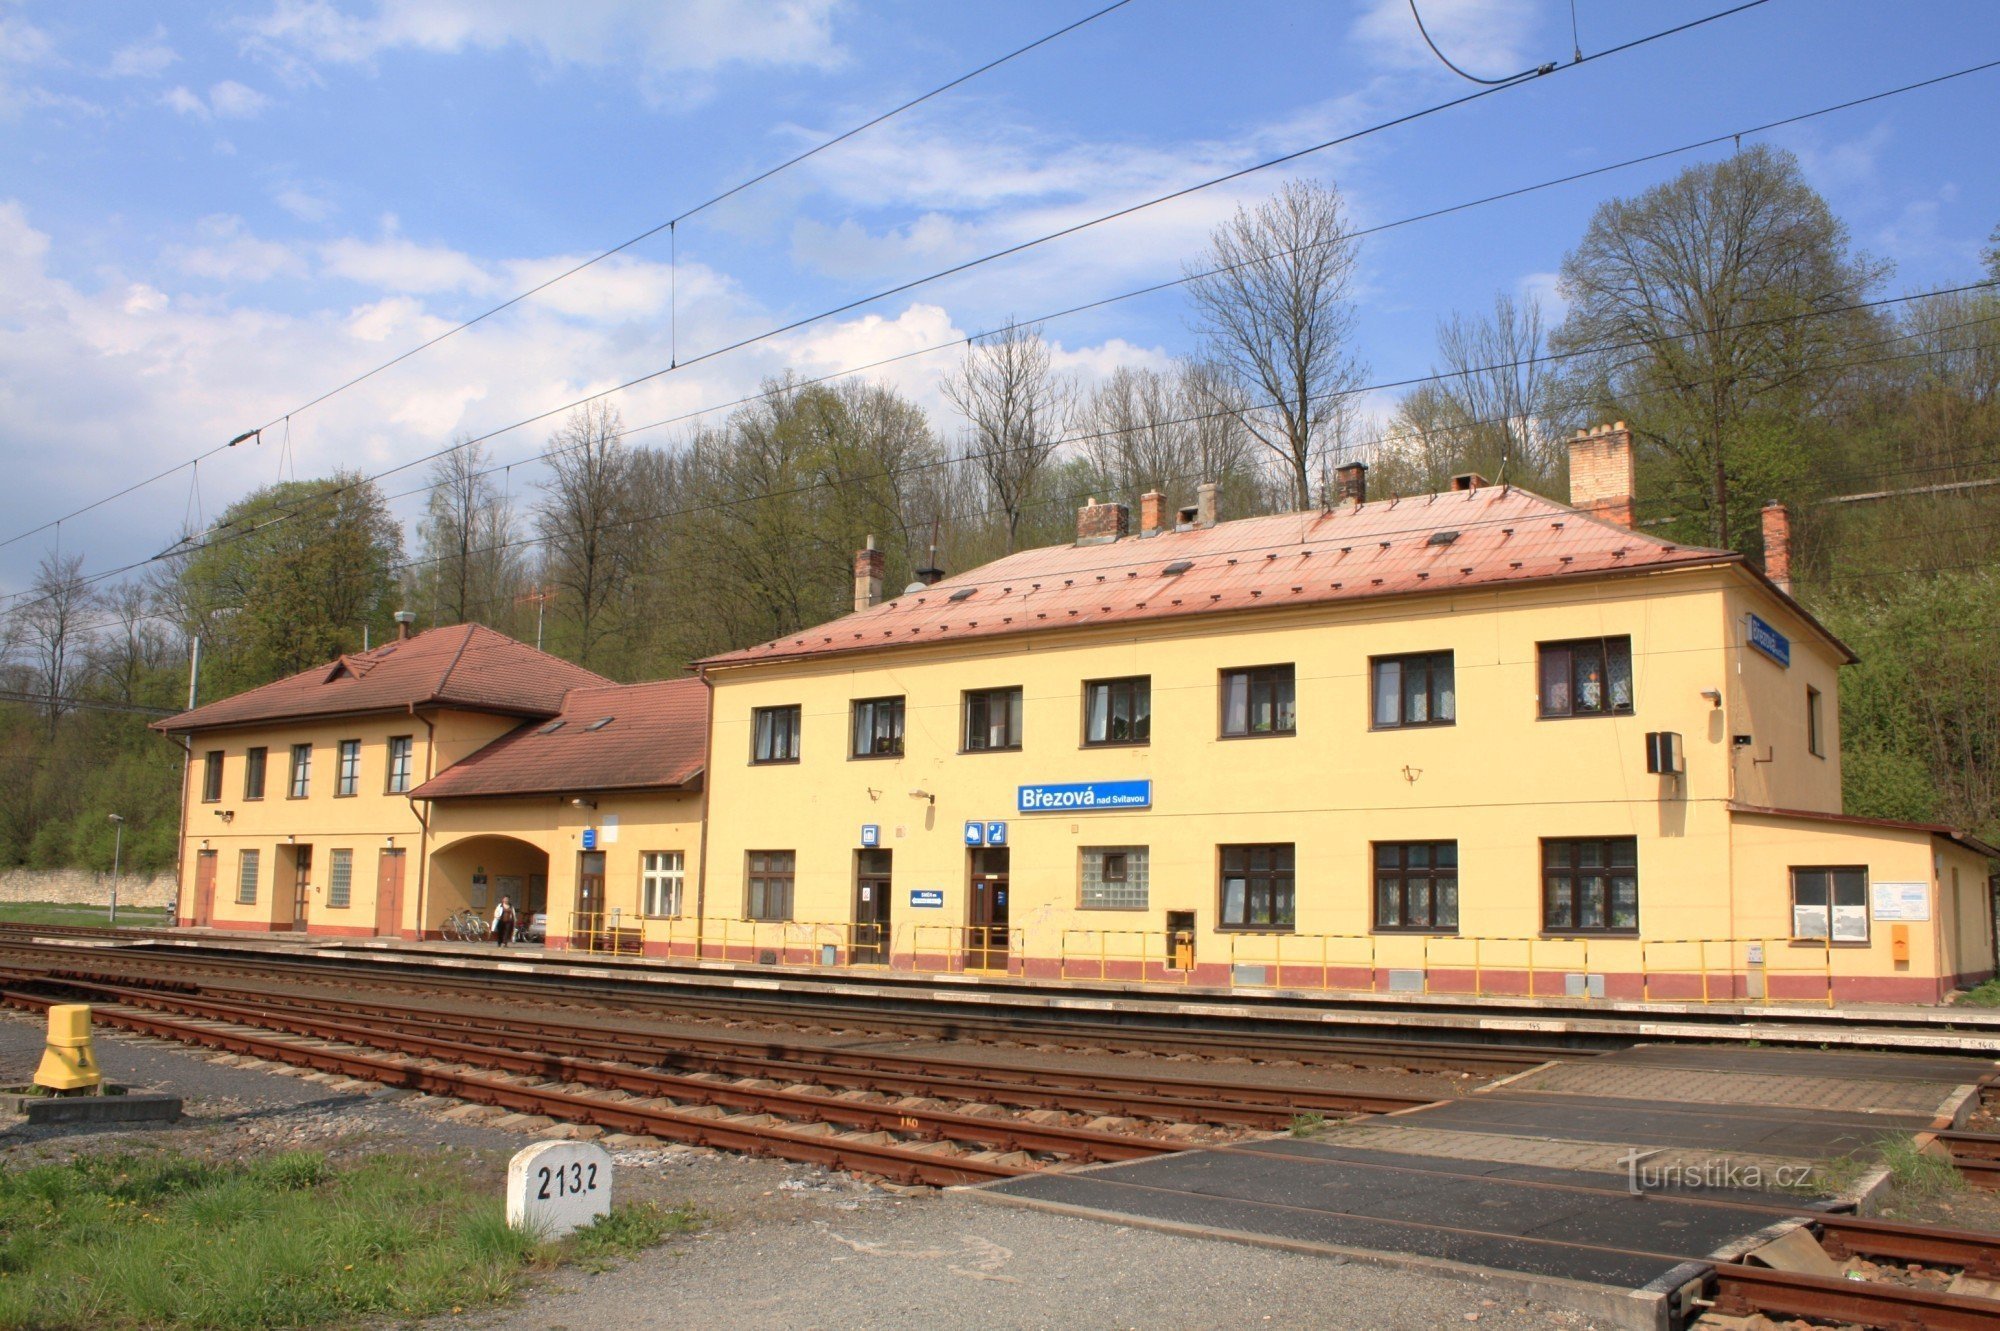 Březová nad Svitavou - dworzec kolejowy